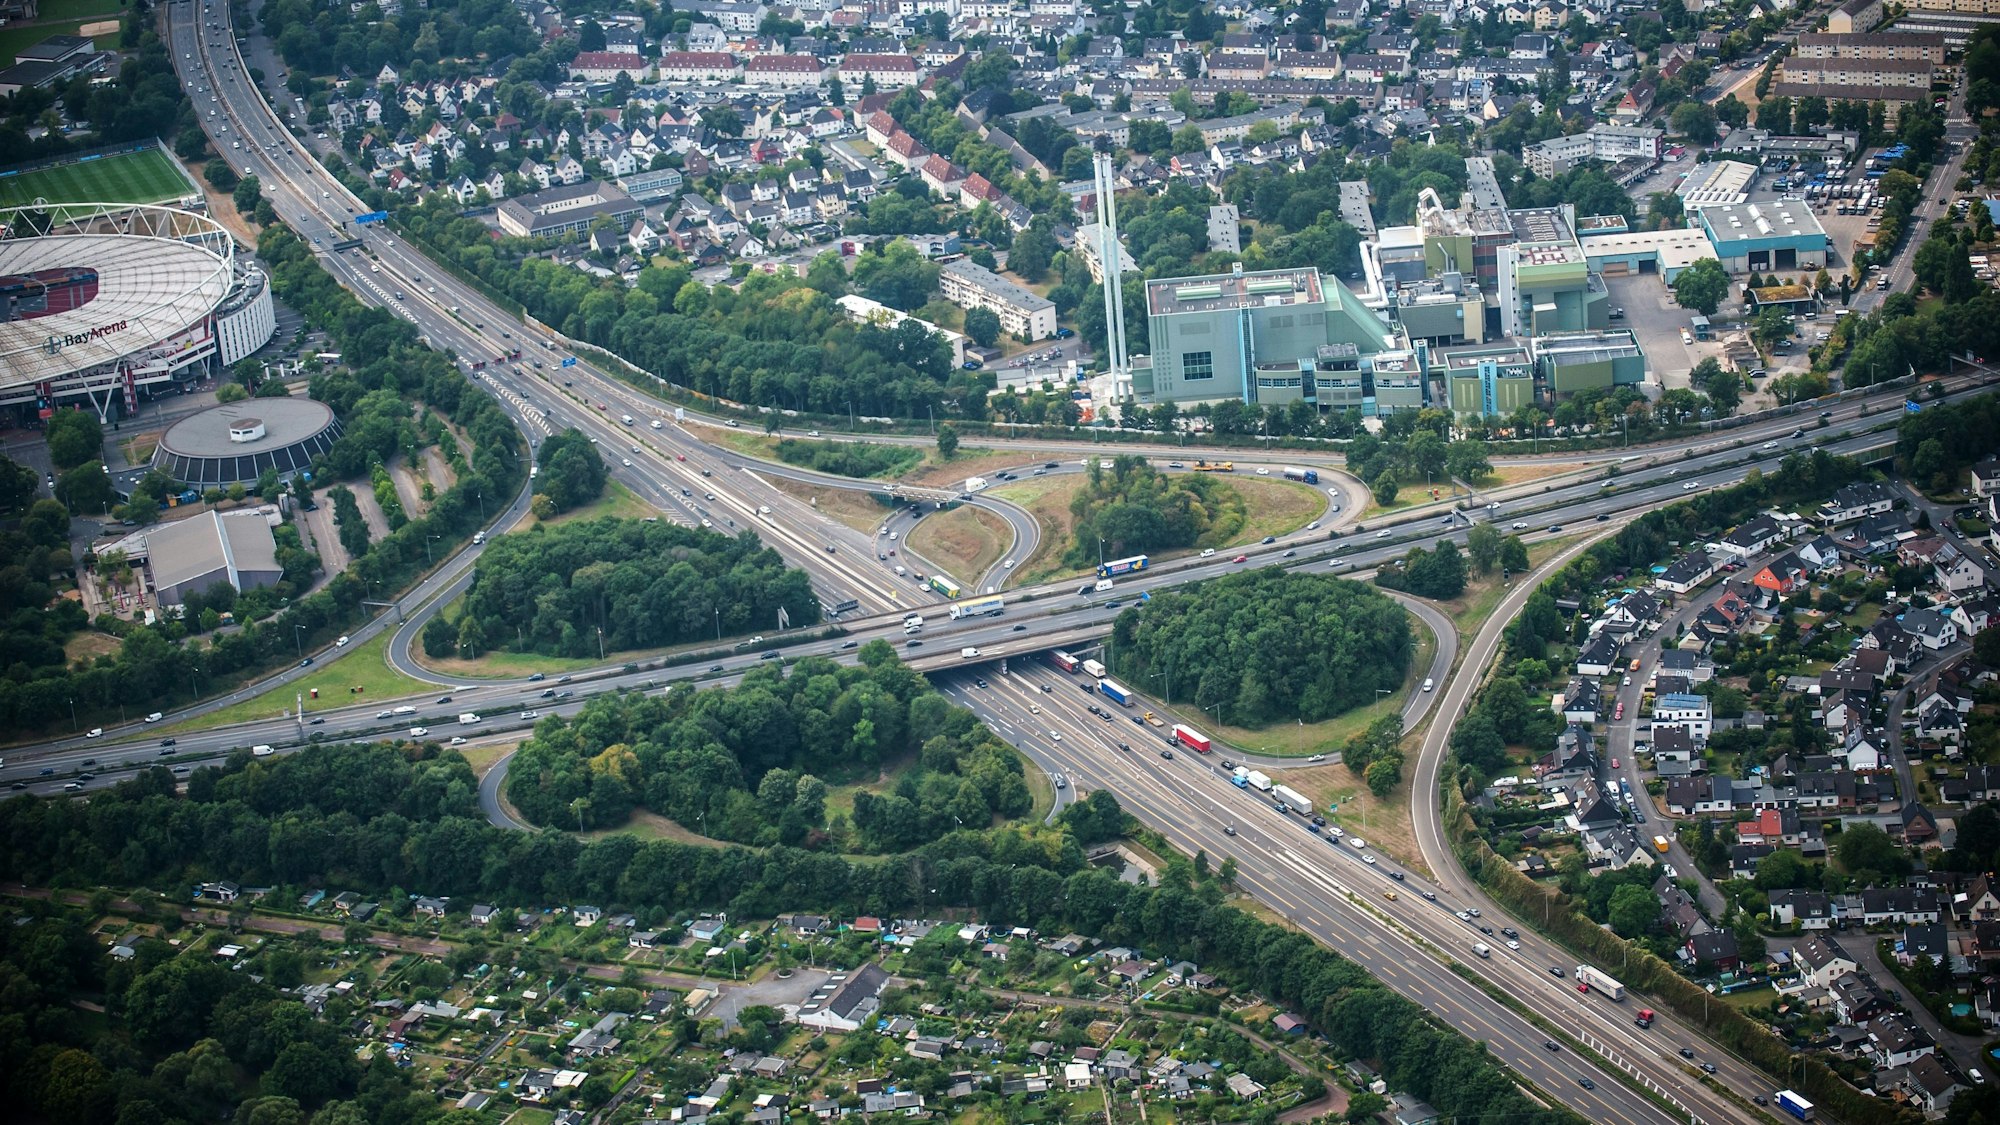 Luftbild des Autobahnkreuz Leverkusen mit den Autobahnen 1 und 3, links ist die Bayarena zu sehen. Auf einer Fahrspur stehen Fahrzeuge im Stau.